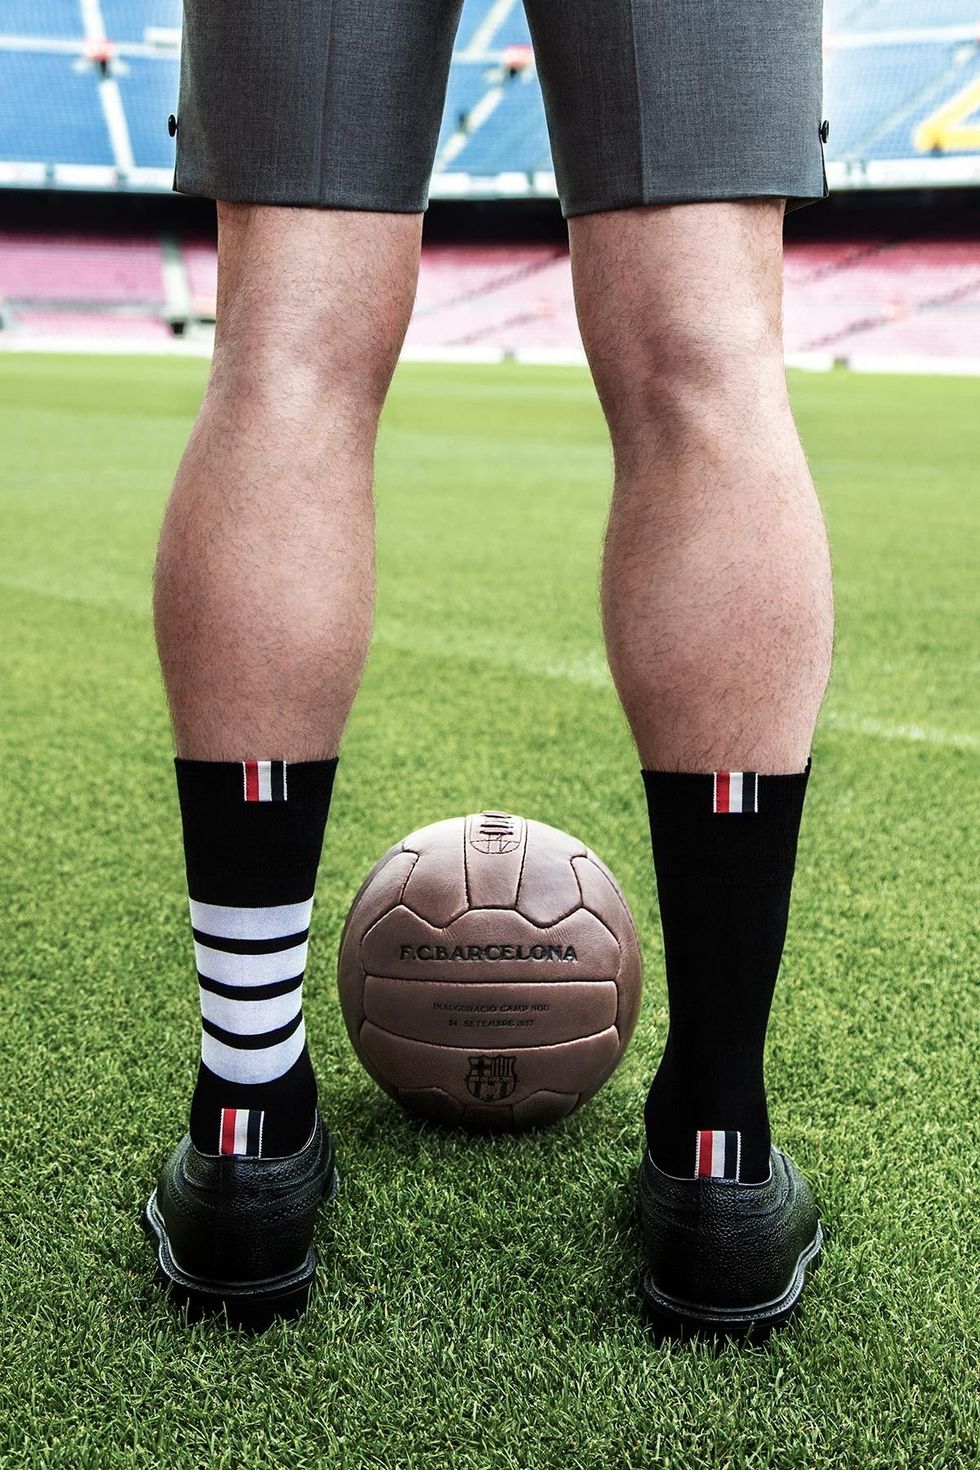 Human leg, Football, Leg, Calf, Sports equipment, Grass, Ball, Knee, Soccer ball, Player, 